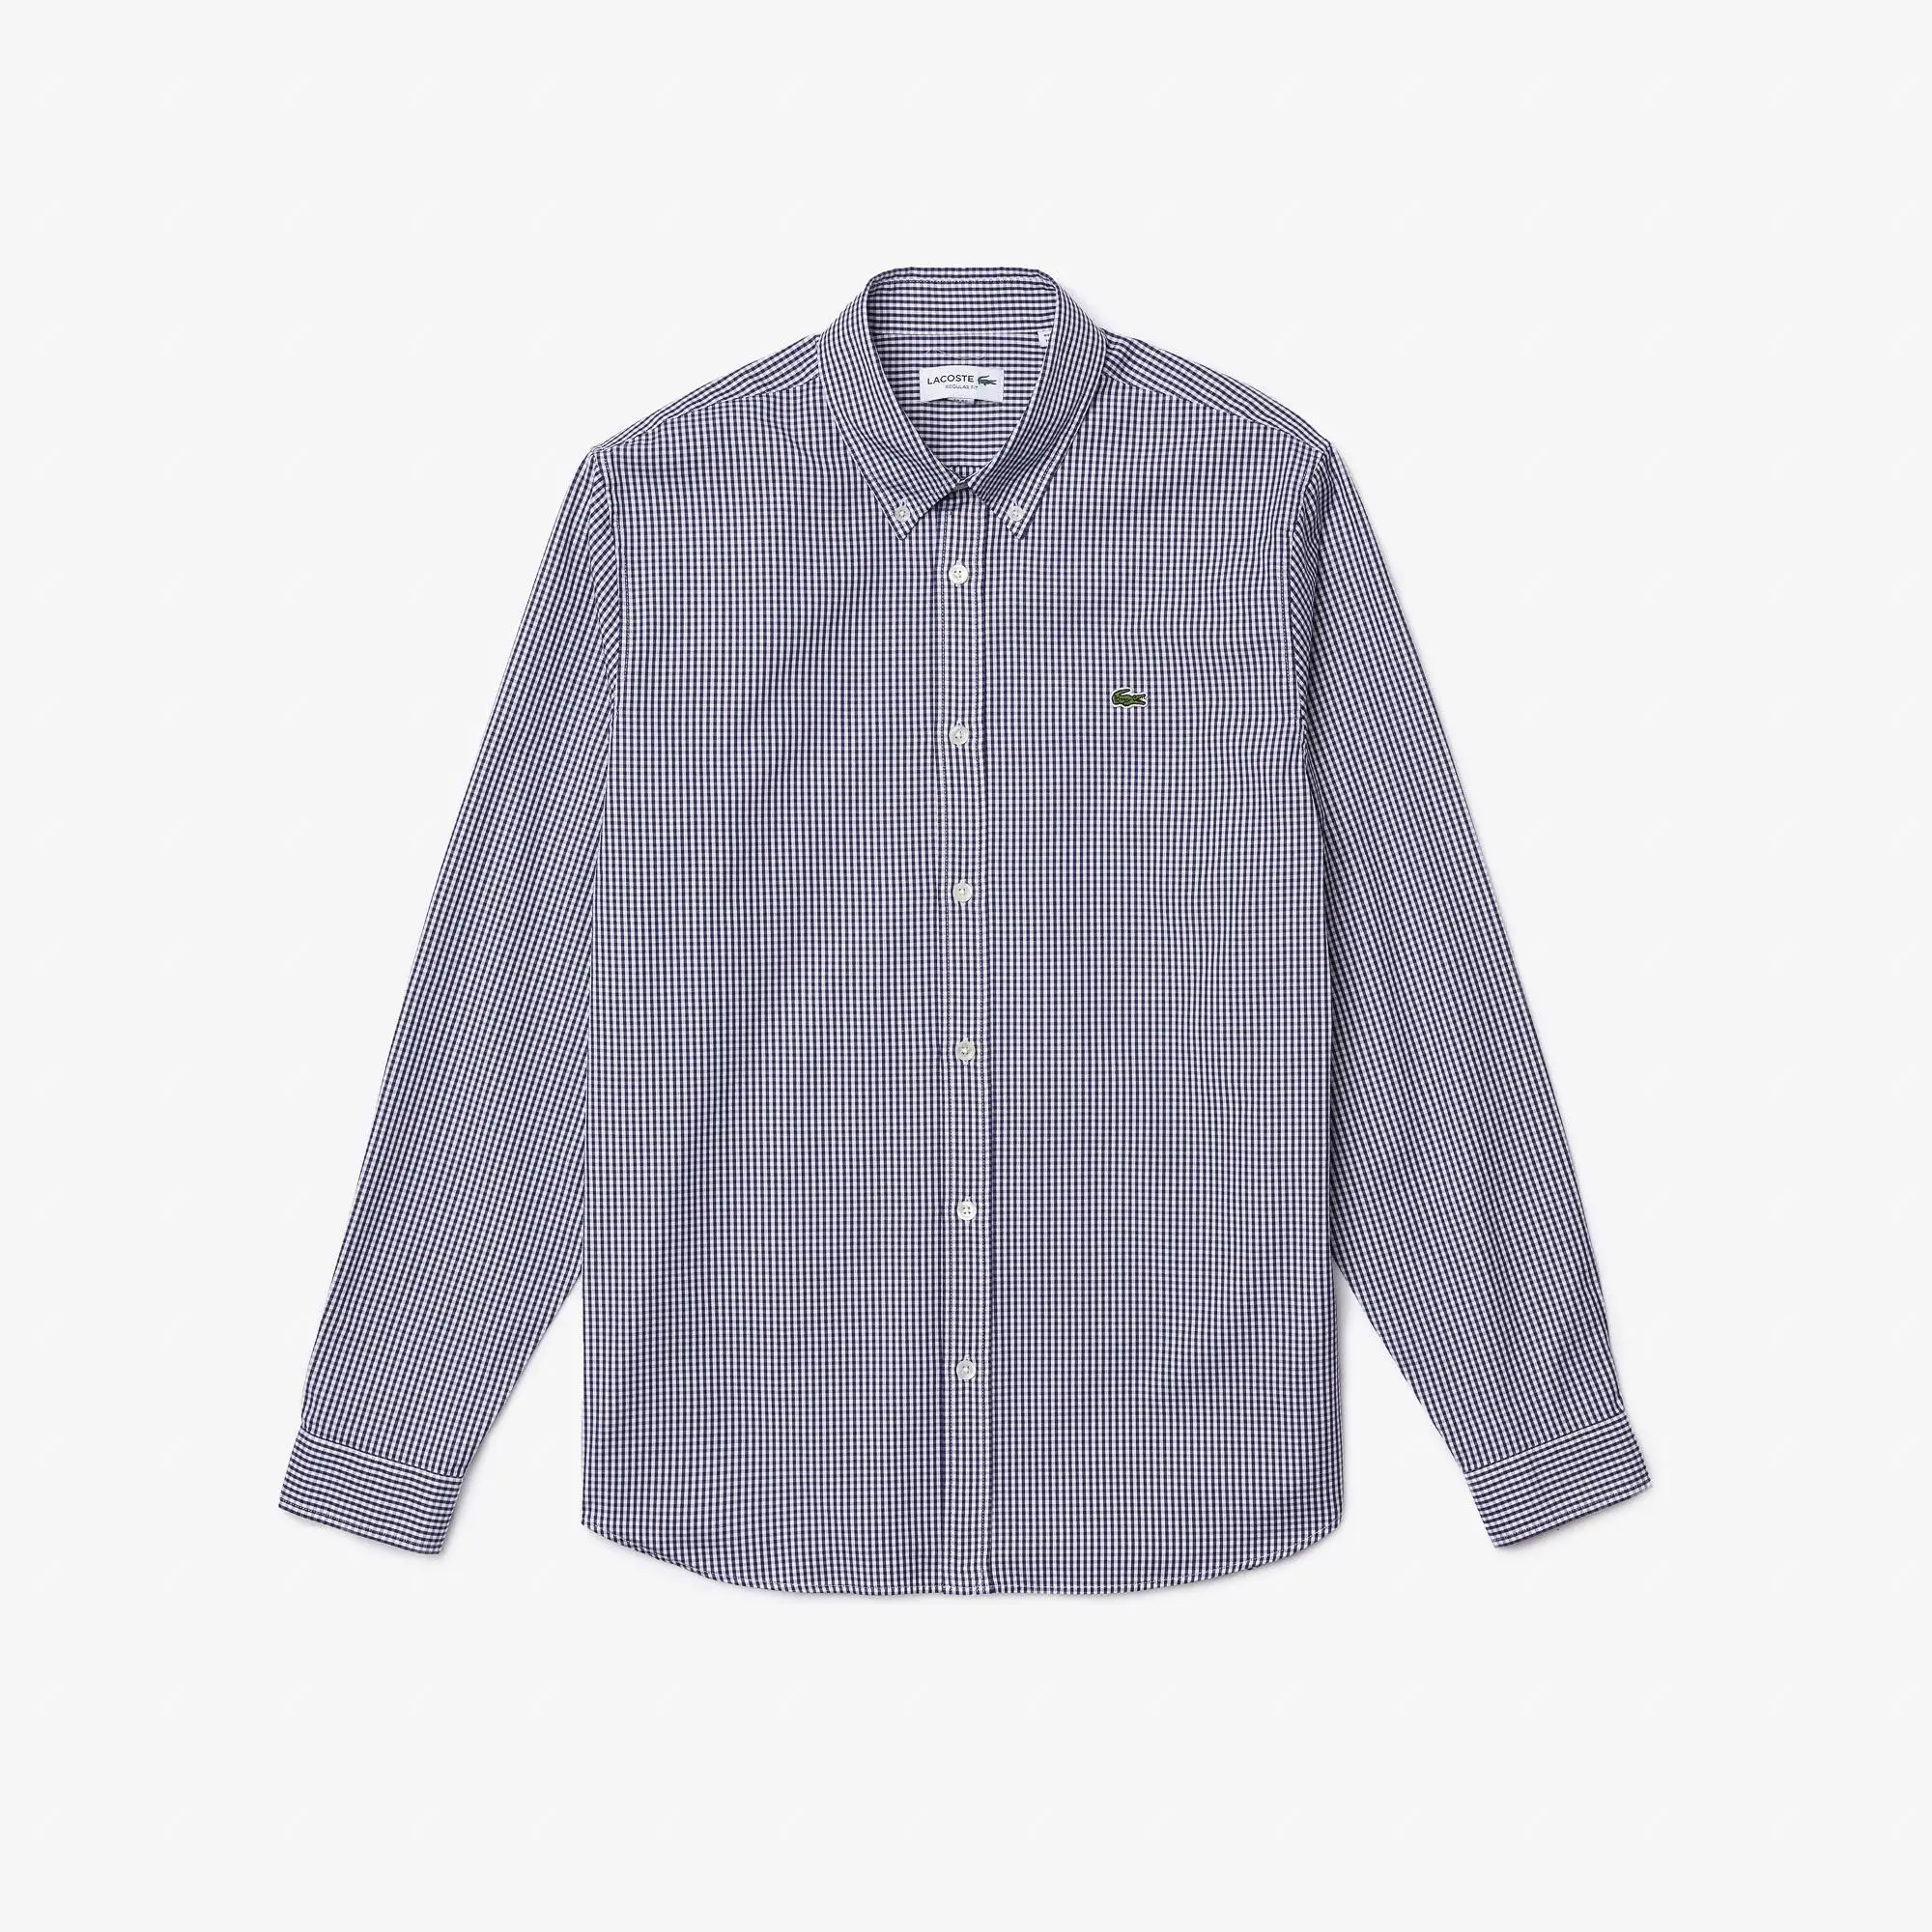 Lacoste Camisa de hombre regular fit en algodón premium de cuadros. 2